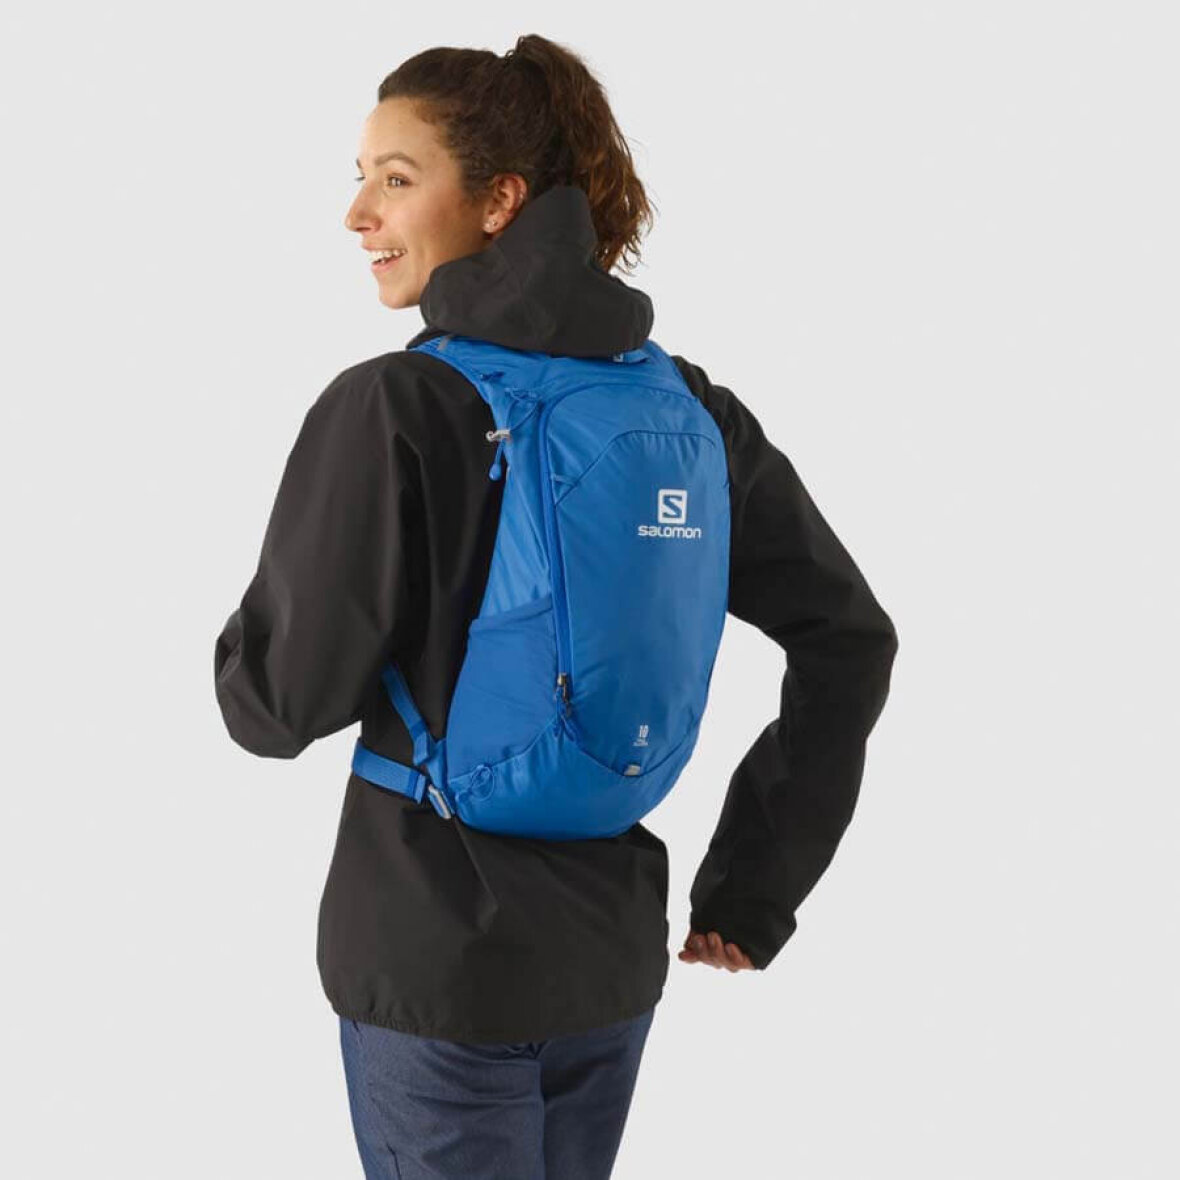 undergrundsbane Berettigelse ambition Salomon Trailblazer 10 - Lækker rygsæk til den aktive hverdag - Køb den her!